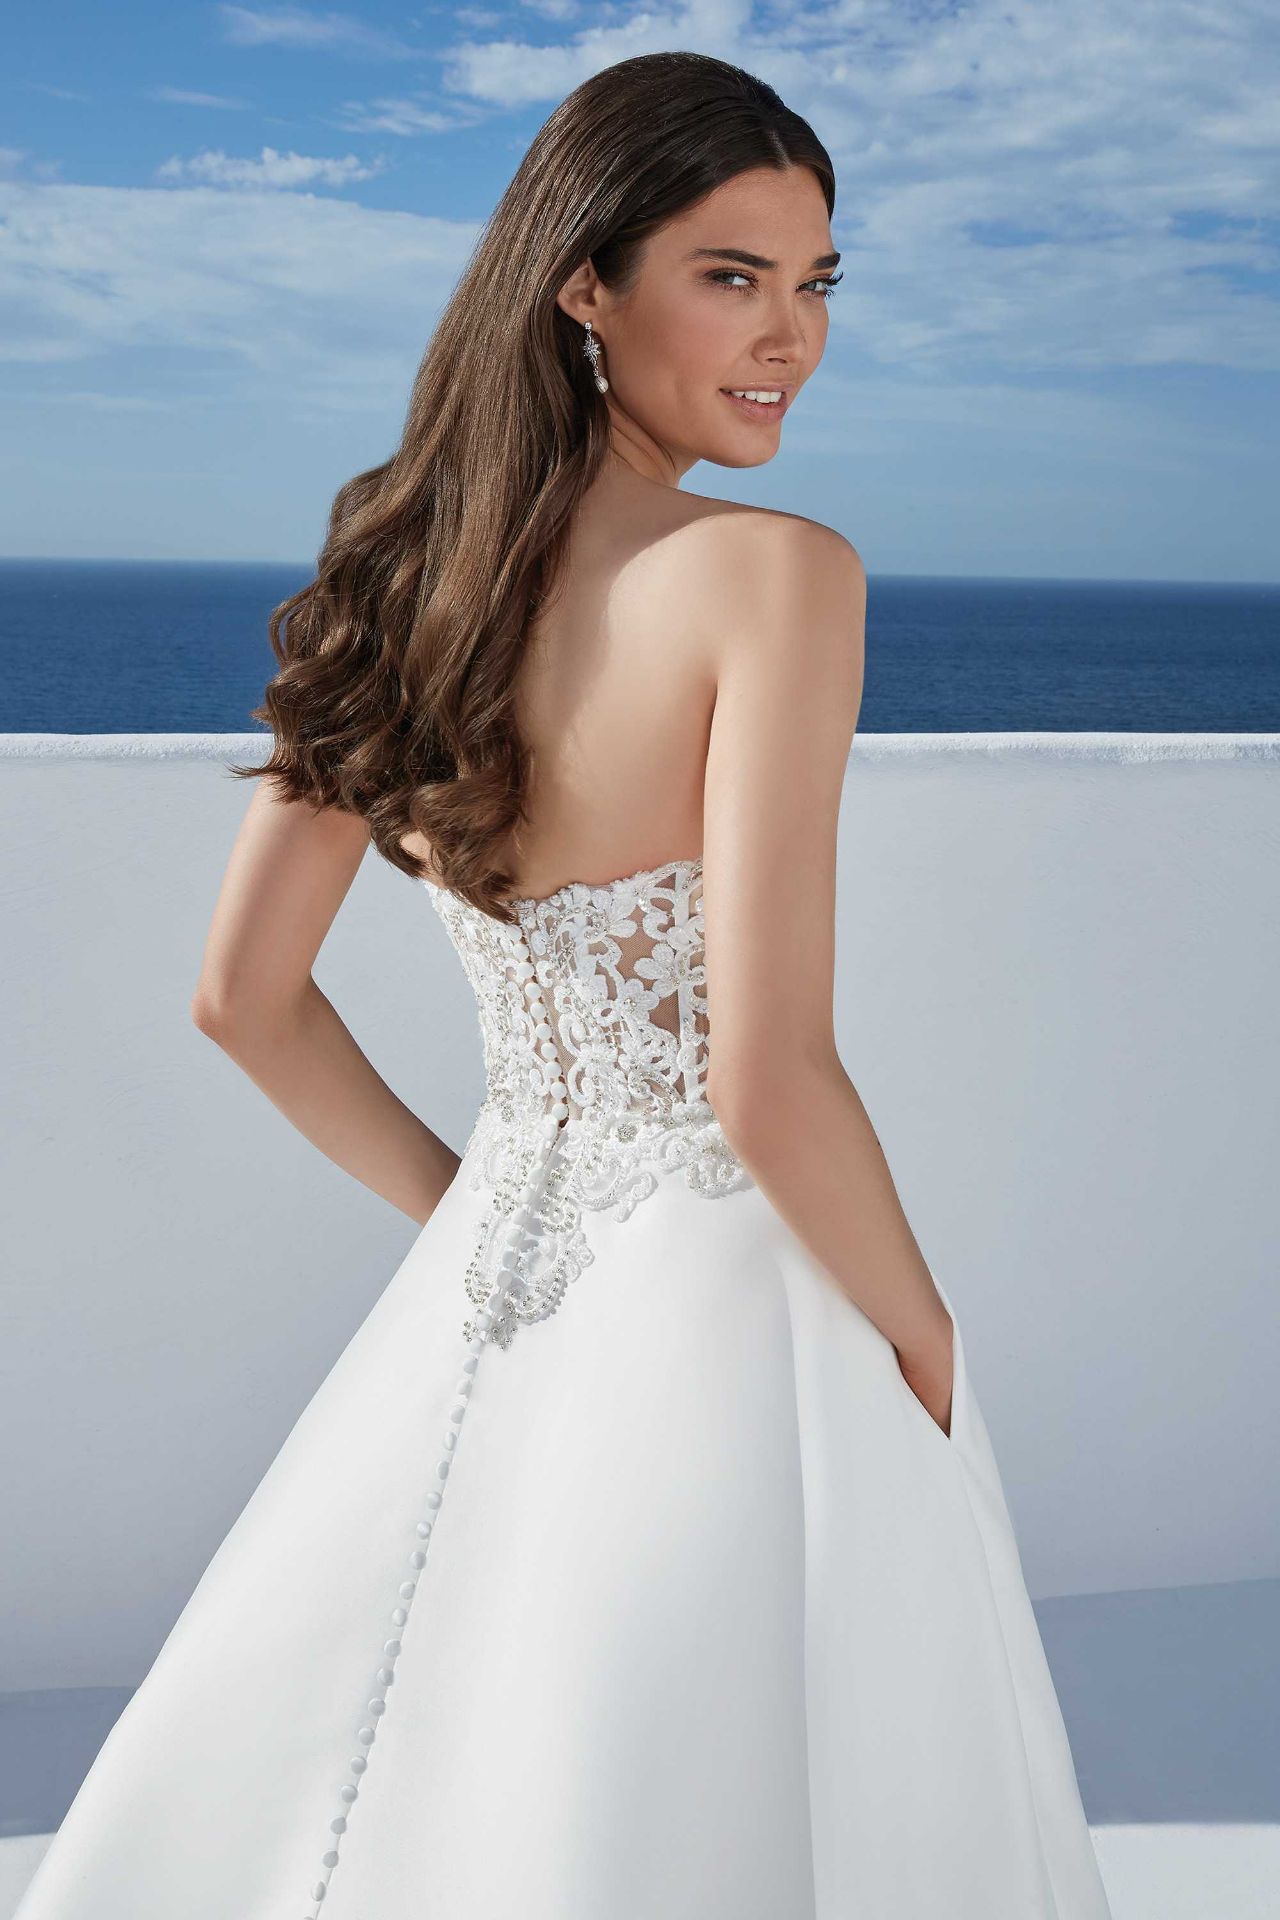 1 x Justin Alexander 'Blake' Modern Designer Mikado Bridal Ball Gown - UK Size 12 - RRP £1,440 - Image 2 of 2